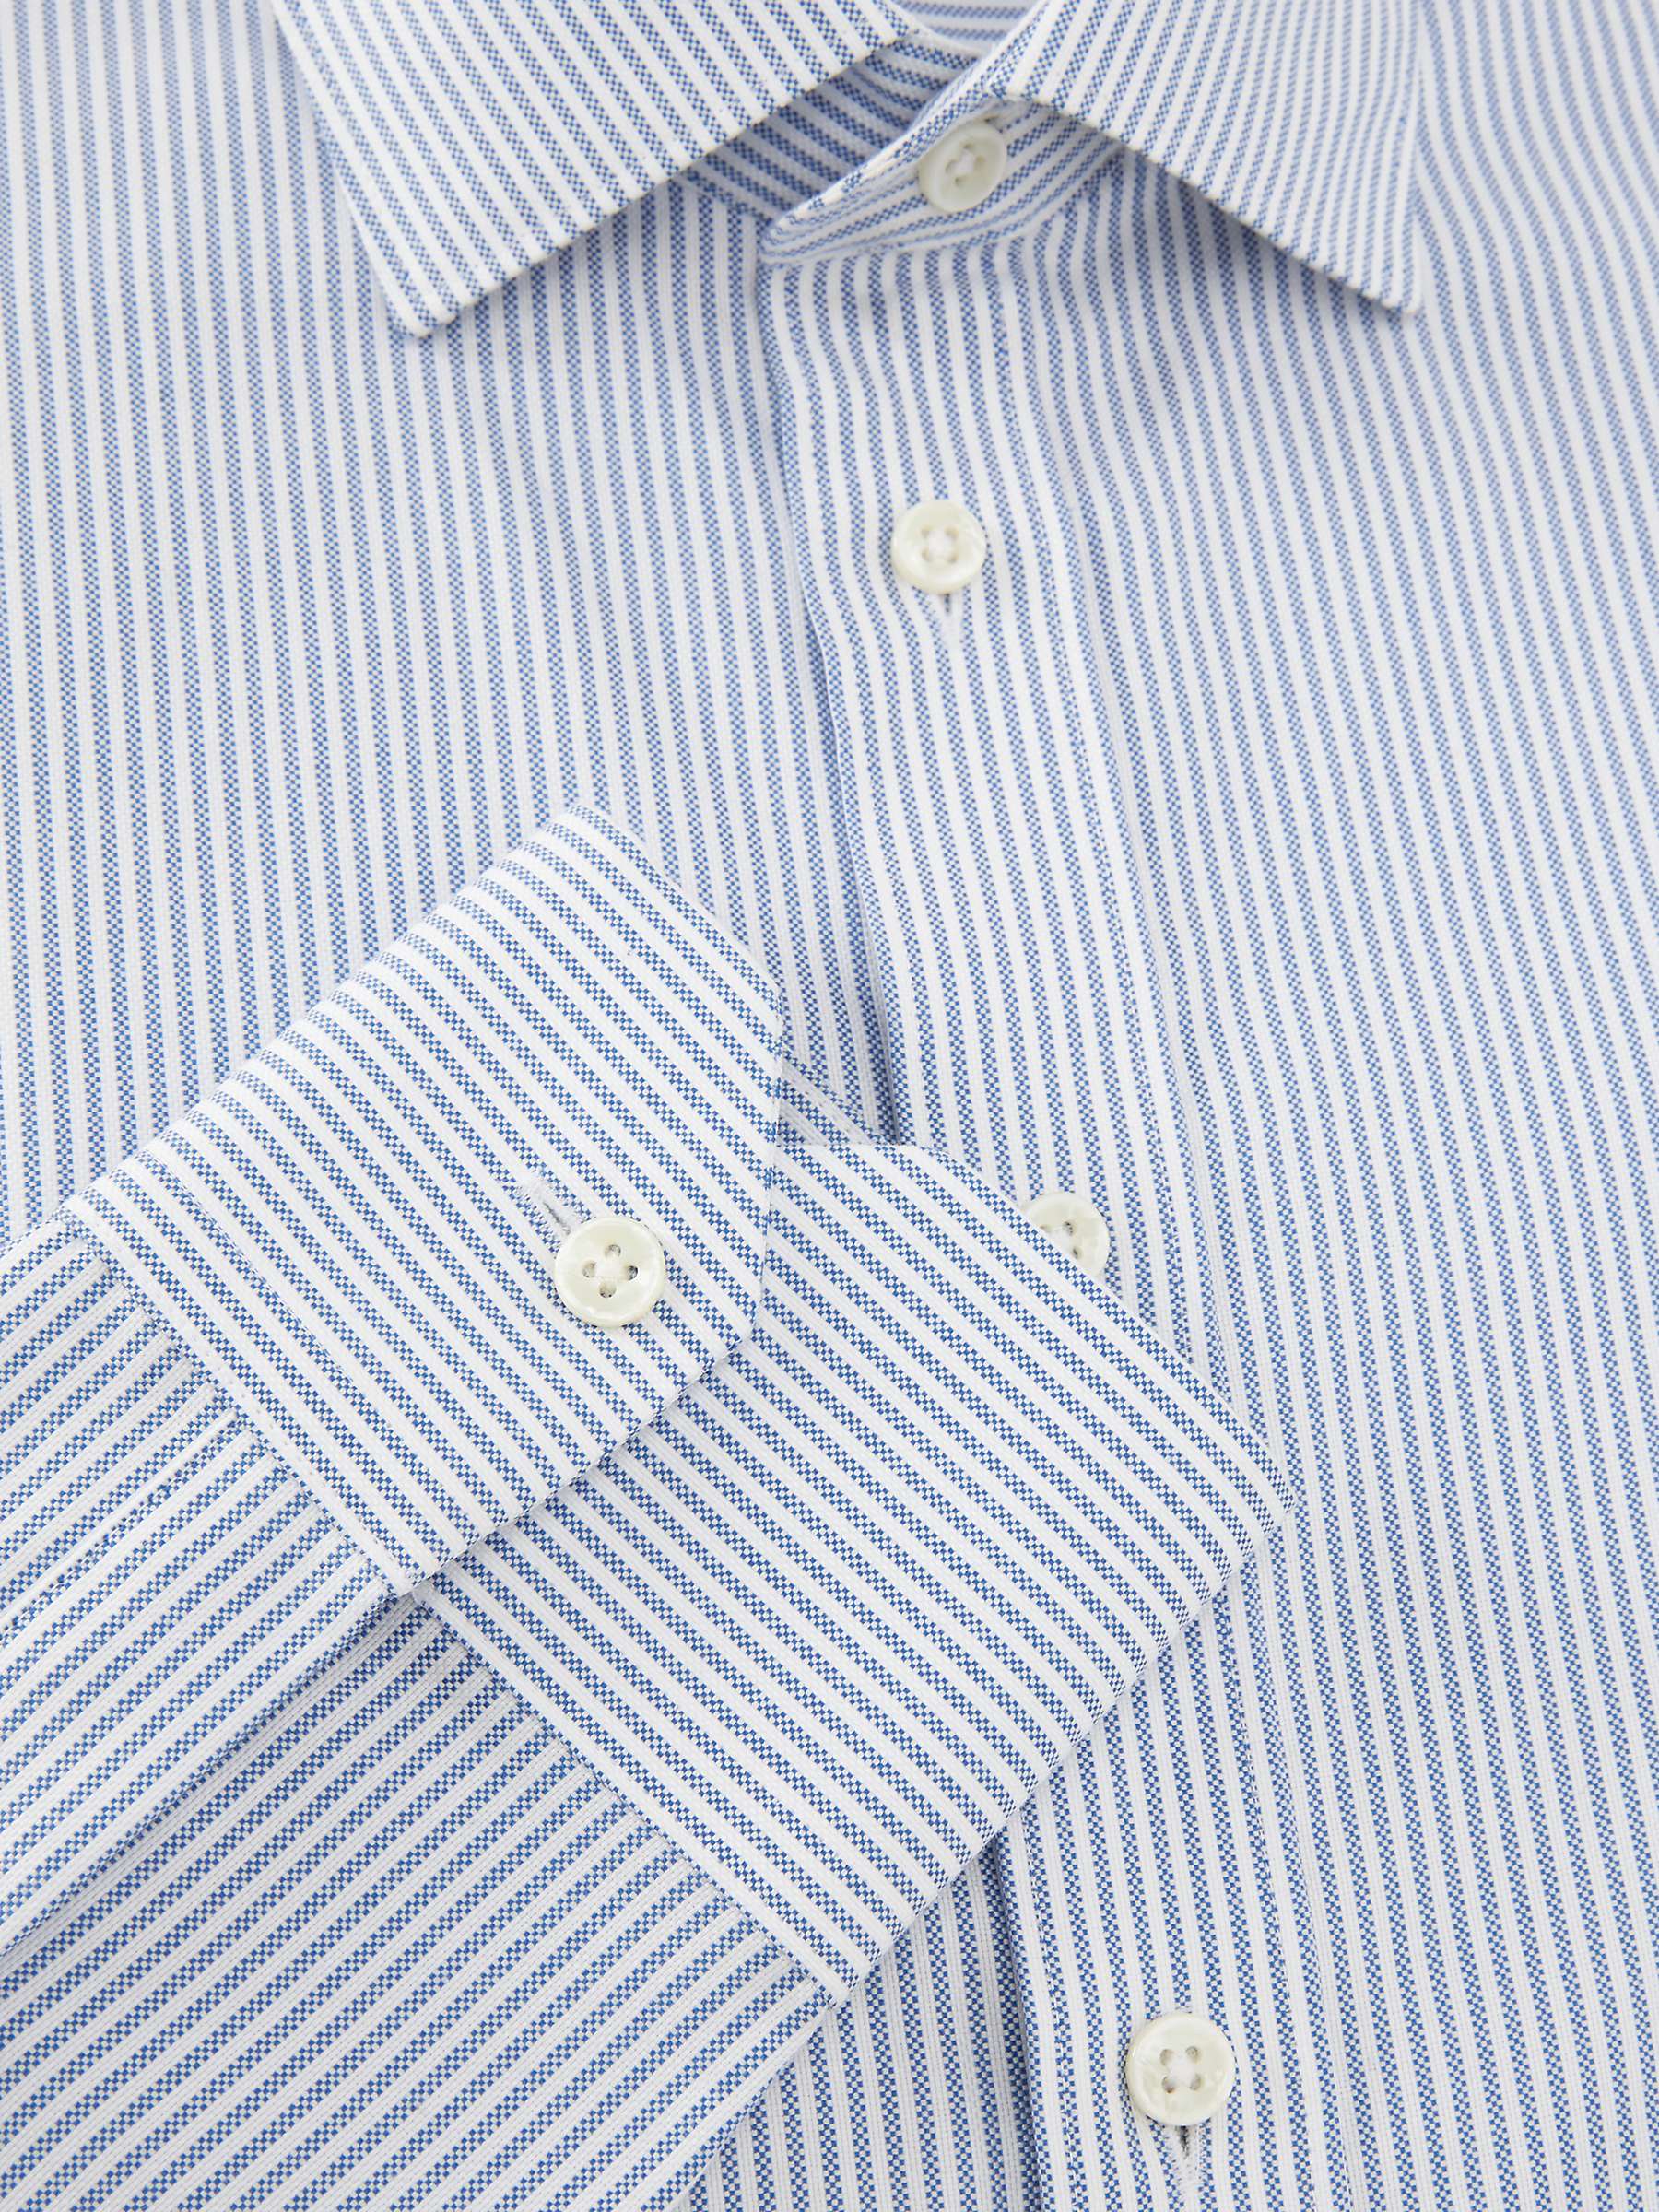 John Lewis Oxford Stripe Tailored Fit Shirt, Blue Stripe at John Lewis ...